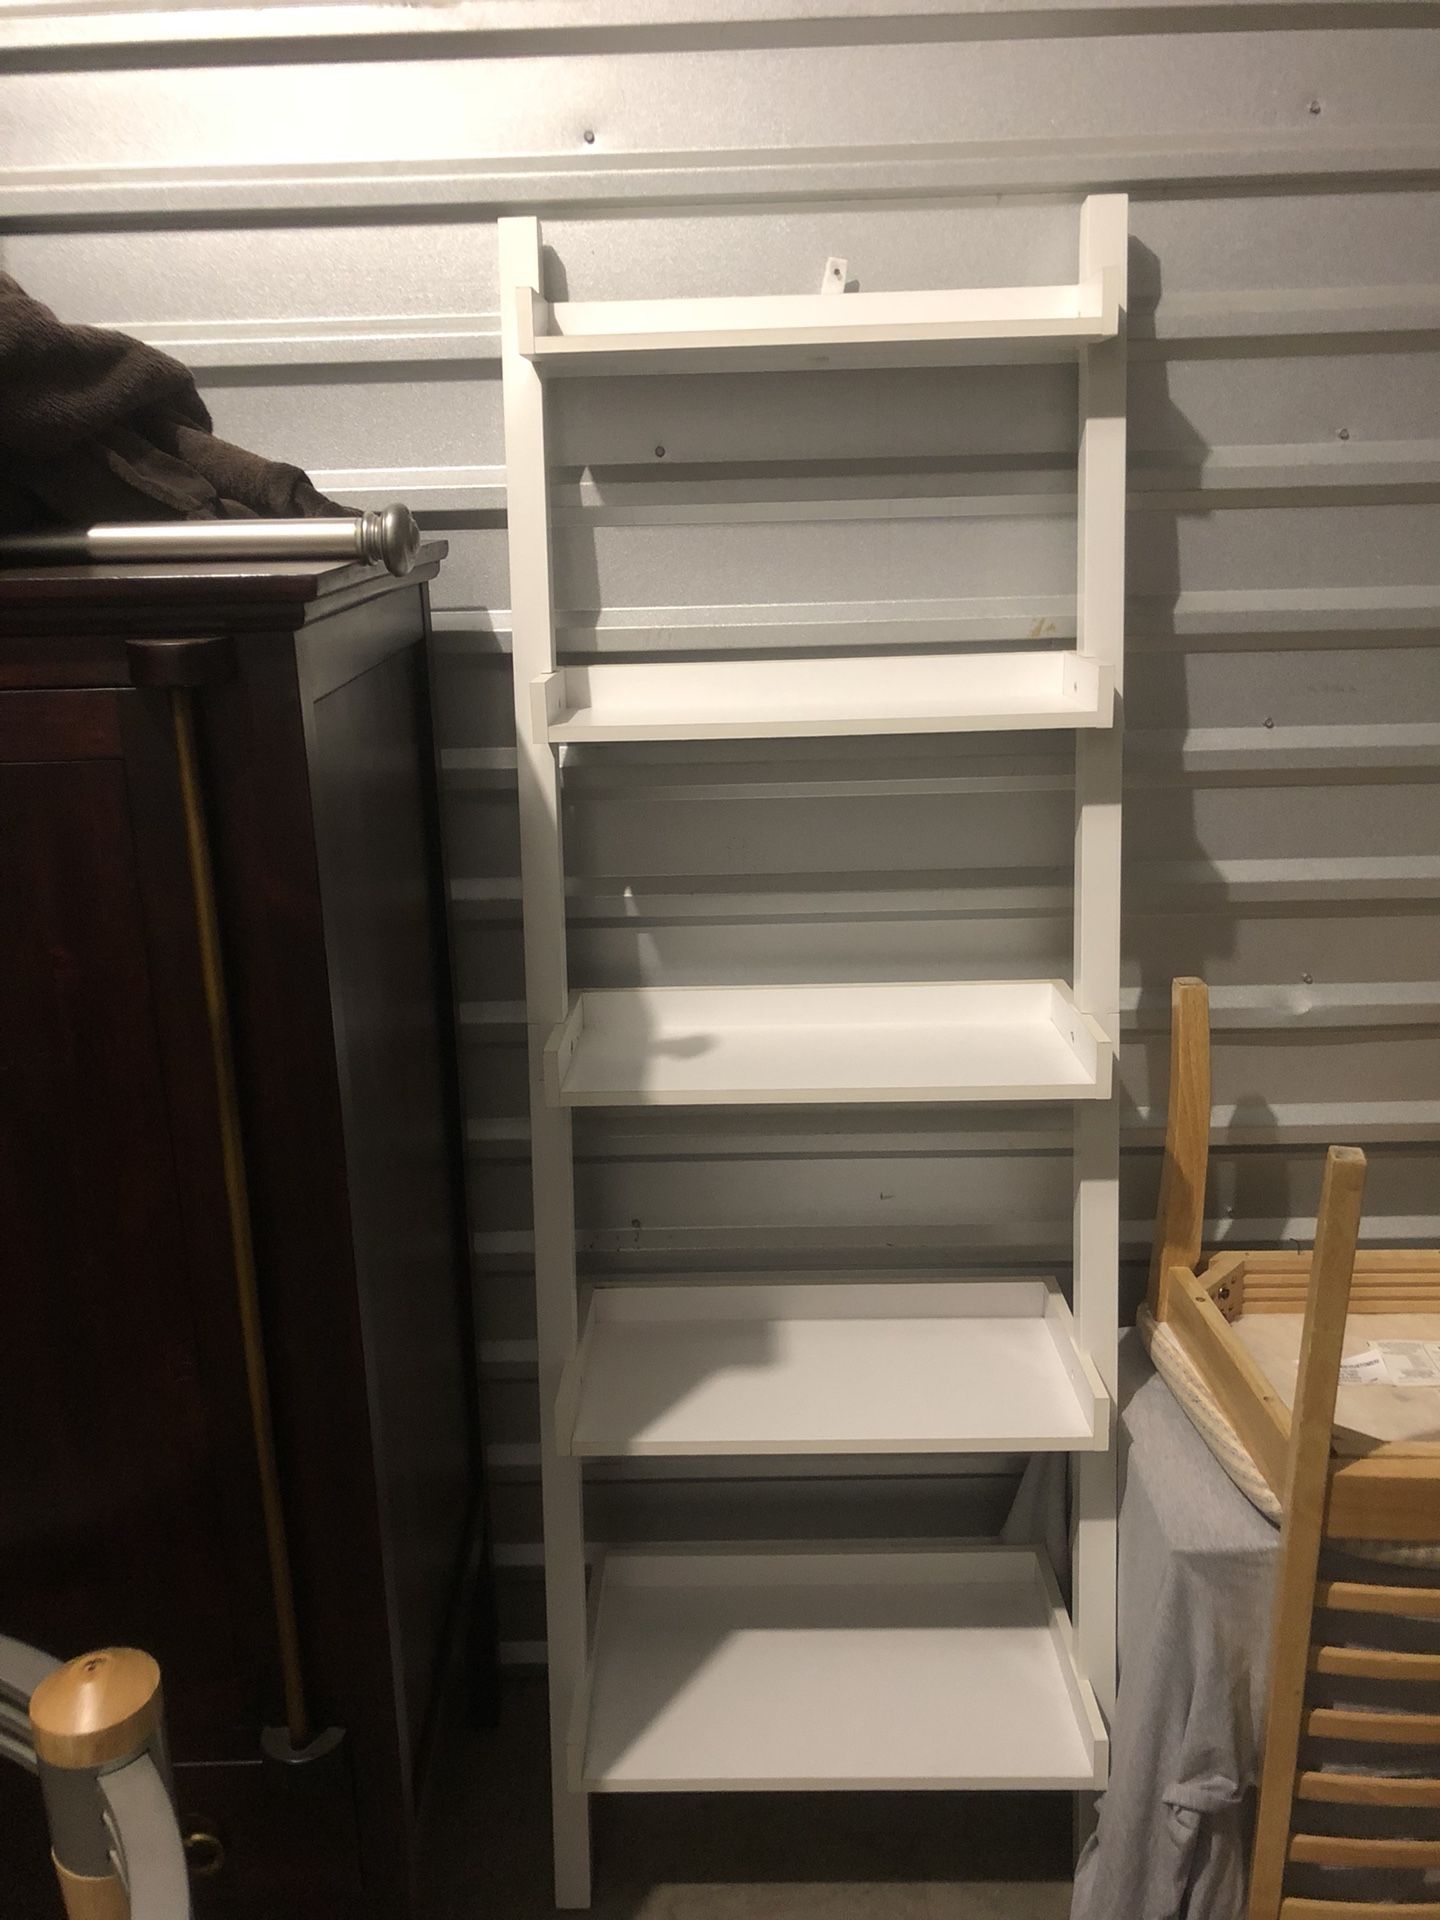 Ladder shelves